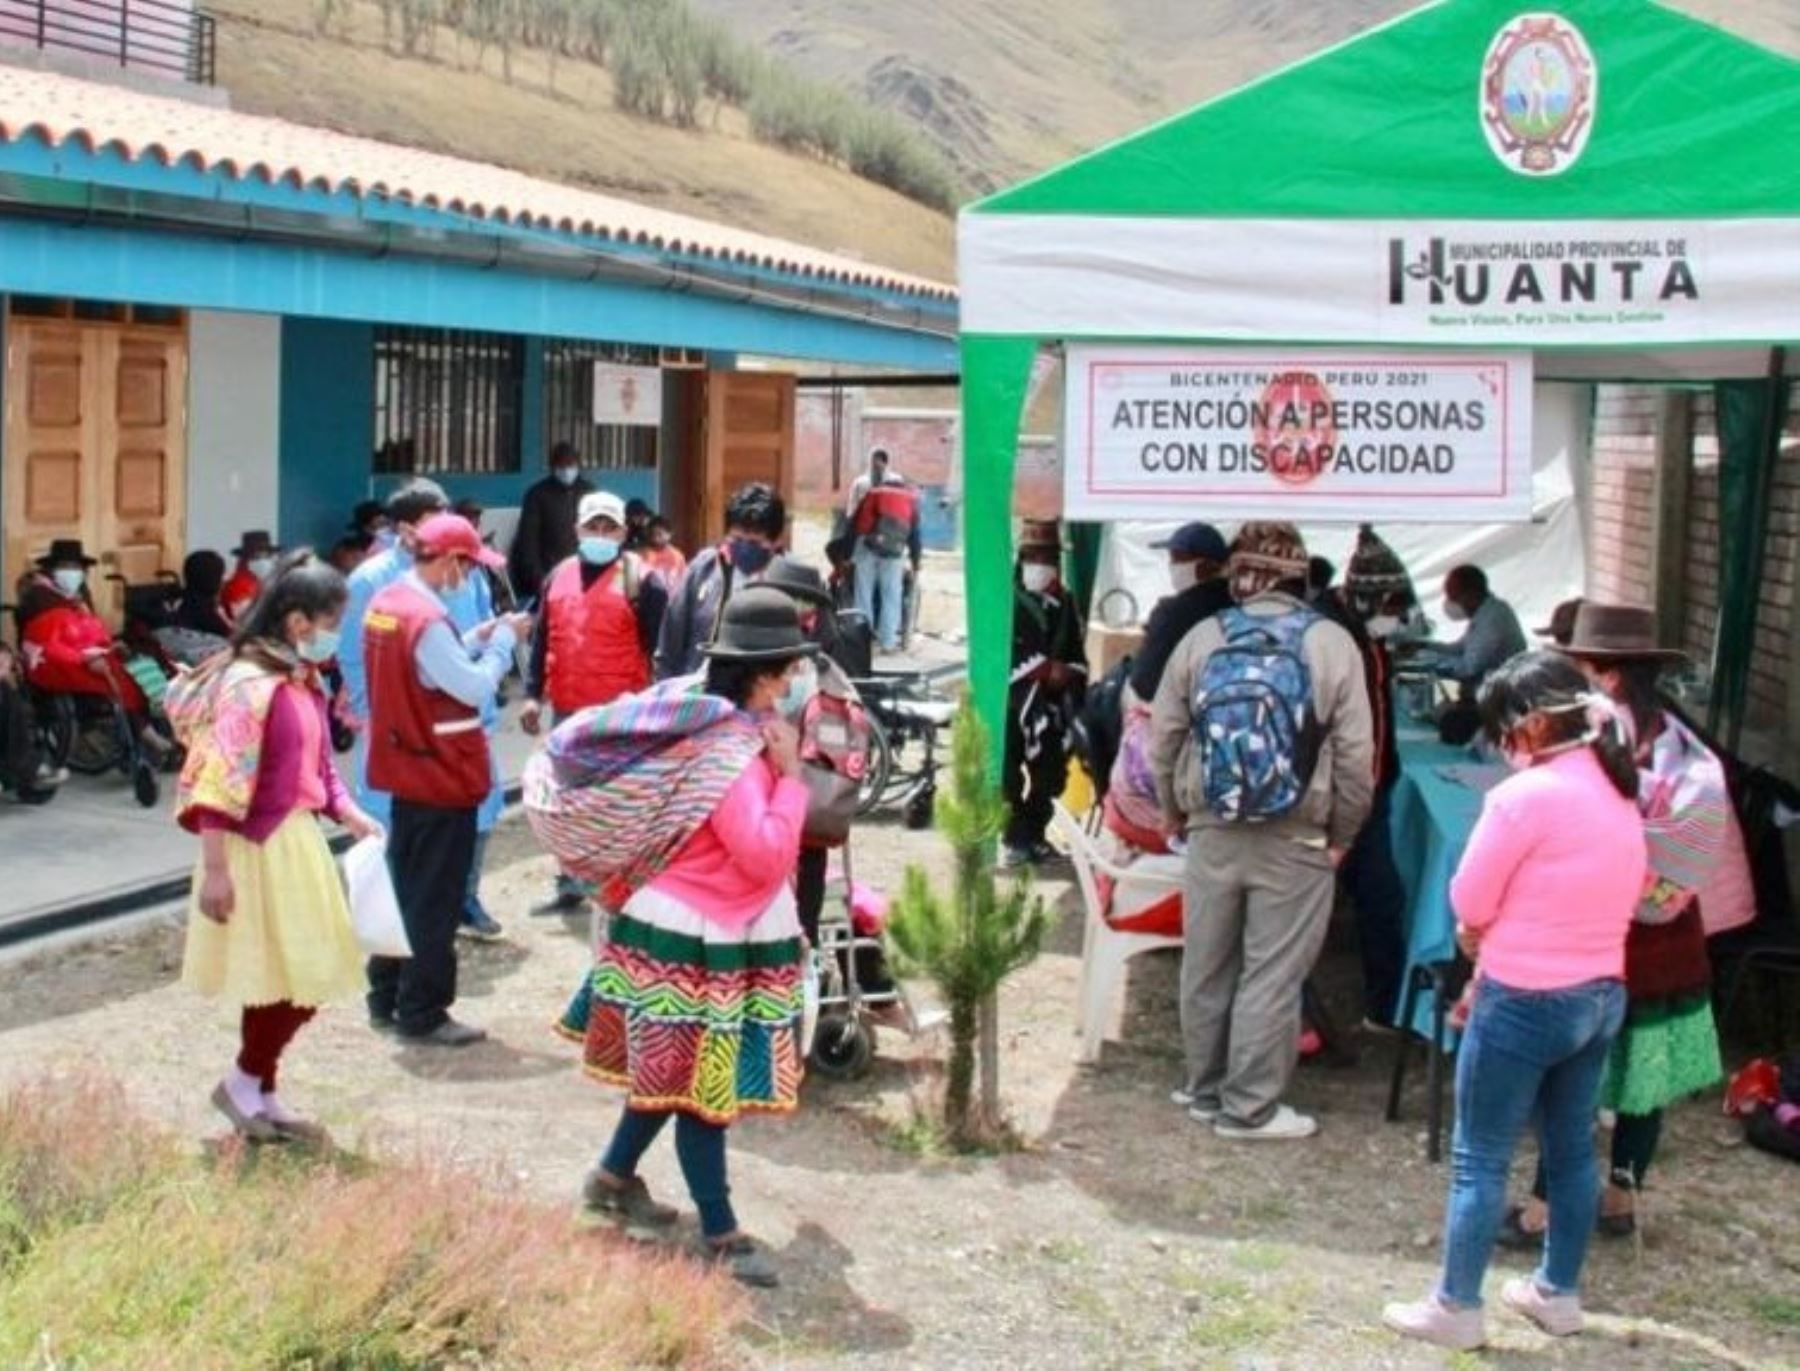 El Instituto Nacional de Rehabilitación del Ministerio de Salud entregó el certificado de discapacidad a las personas que se encuentren en esa condición en el distrito de Uchuraccay, en Ayacucho. Foto: ANDINA/Difusión.